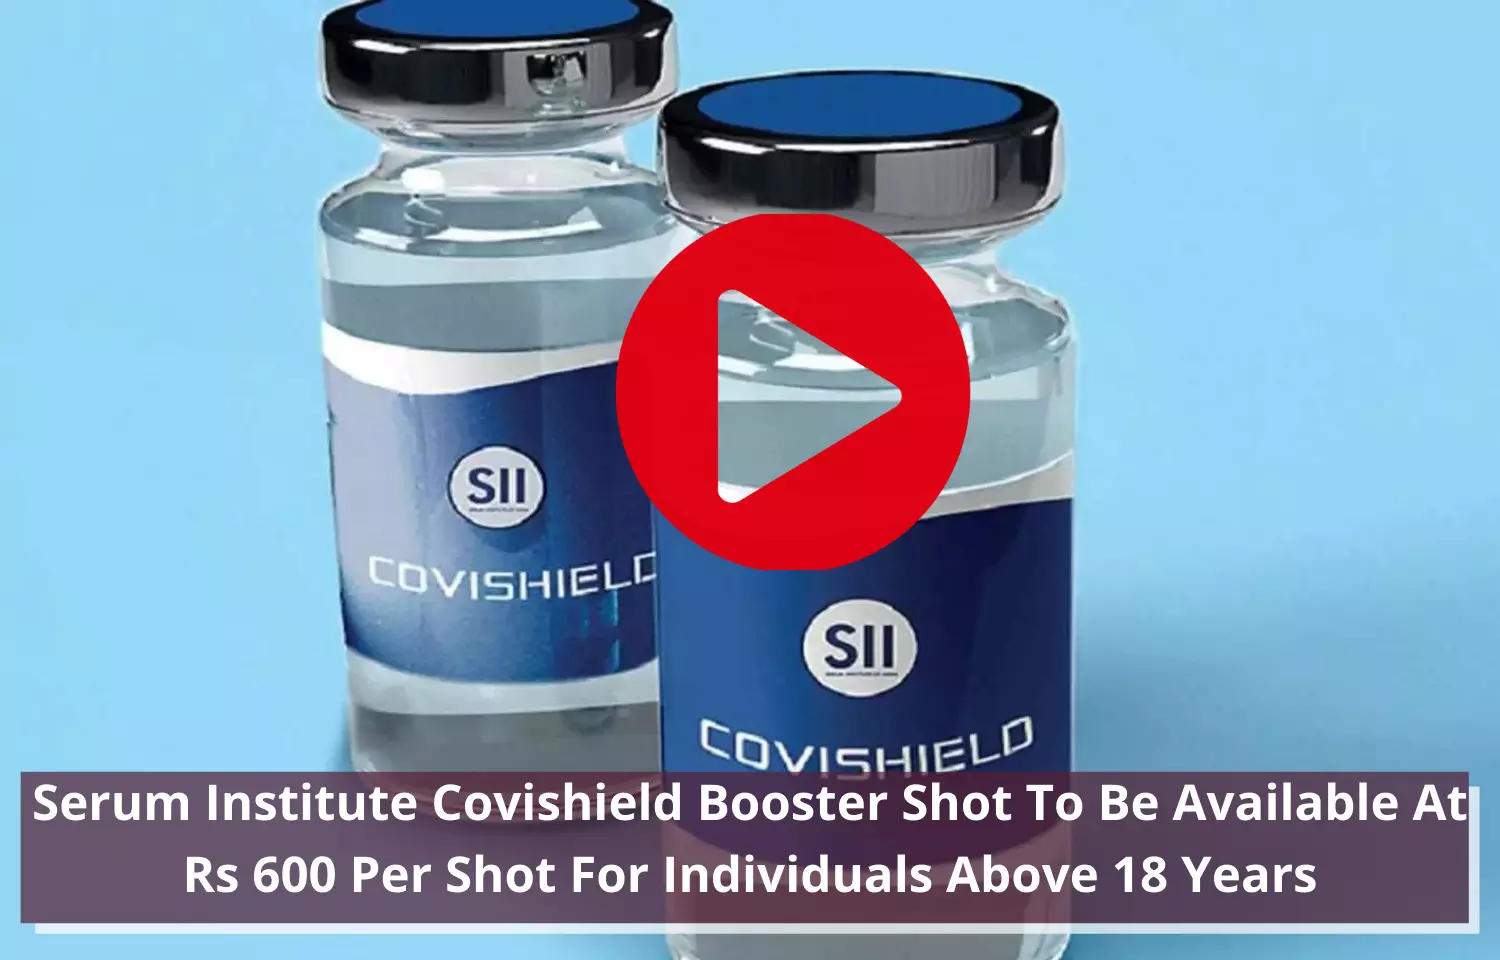 Serum Institute Covishield Booster Shot to cost Rs 600 Per Shot